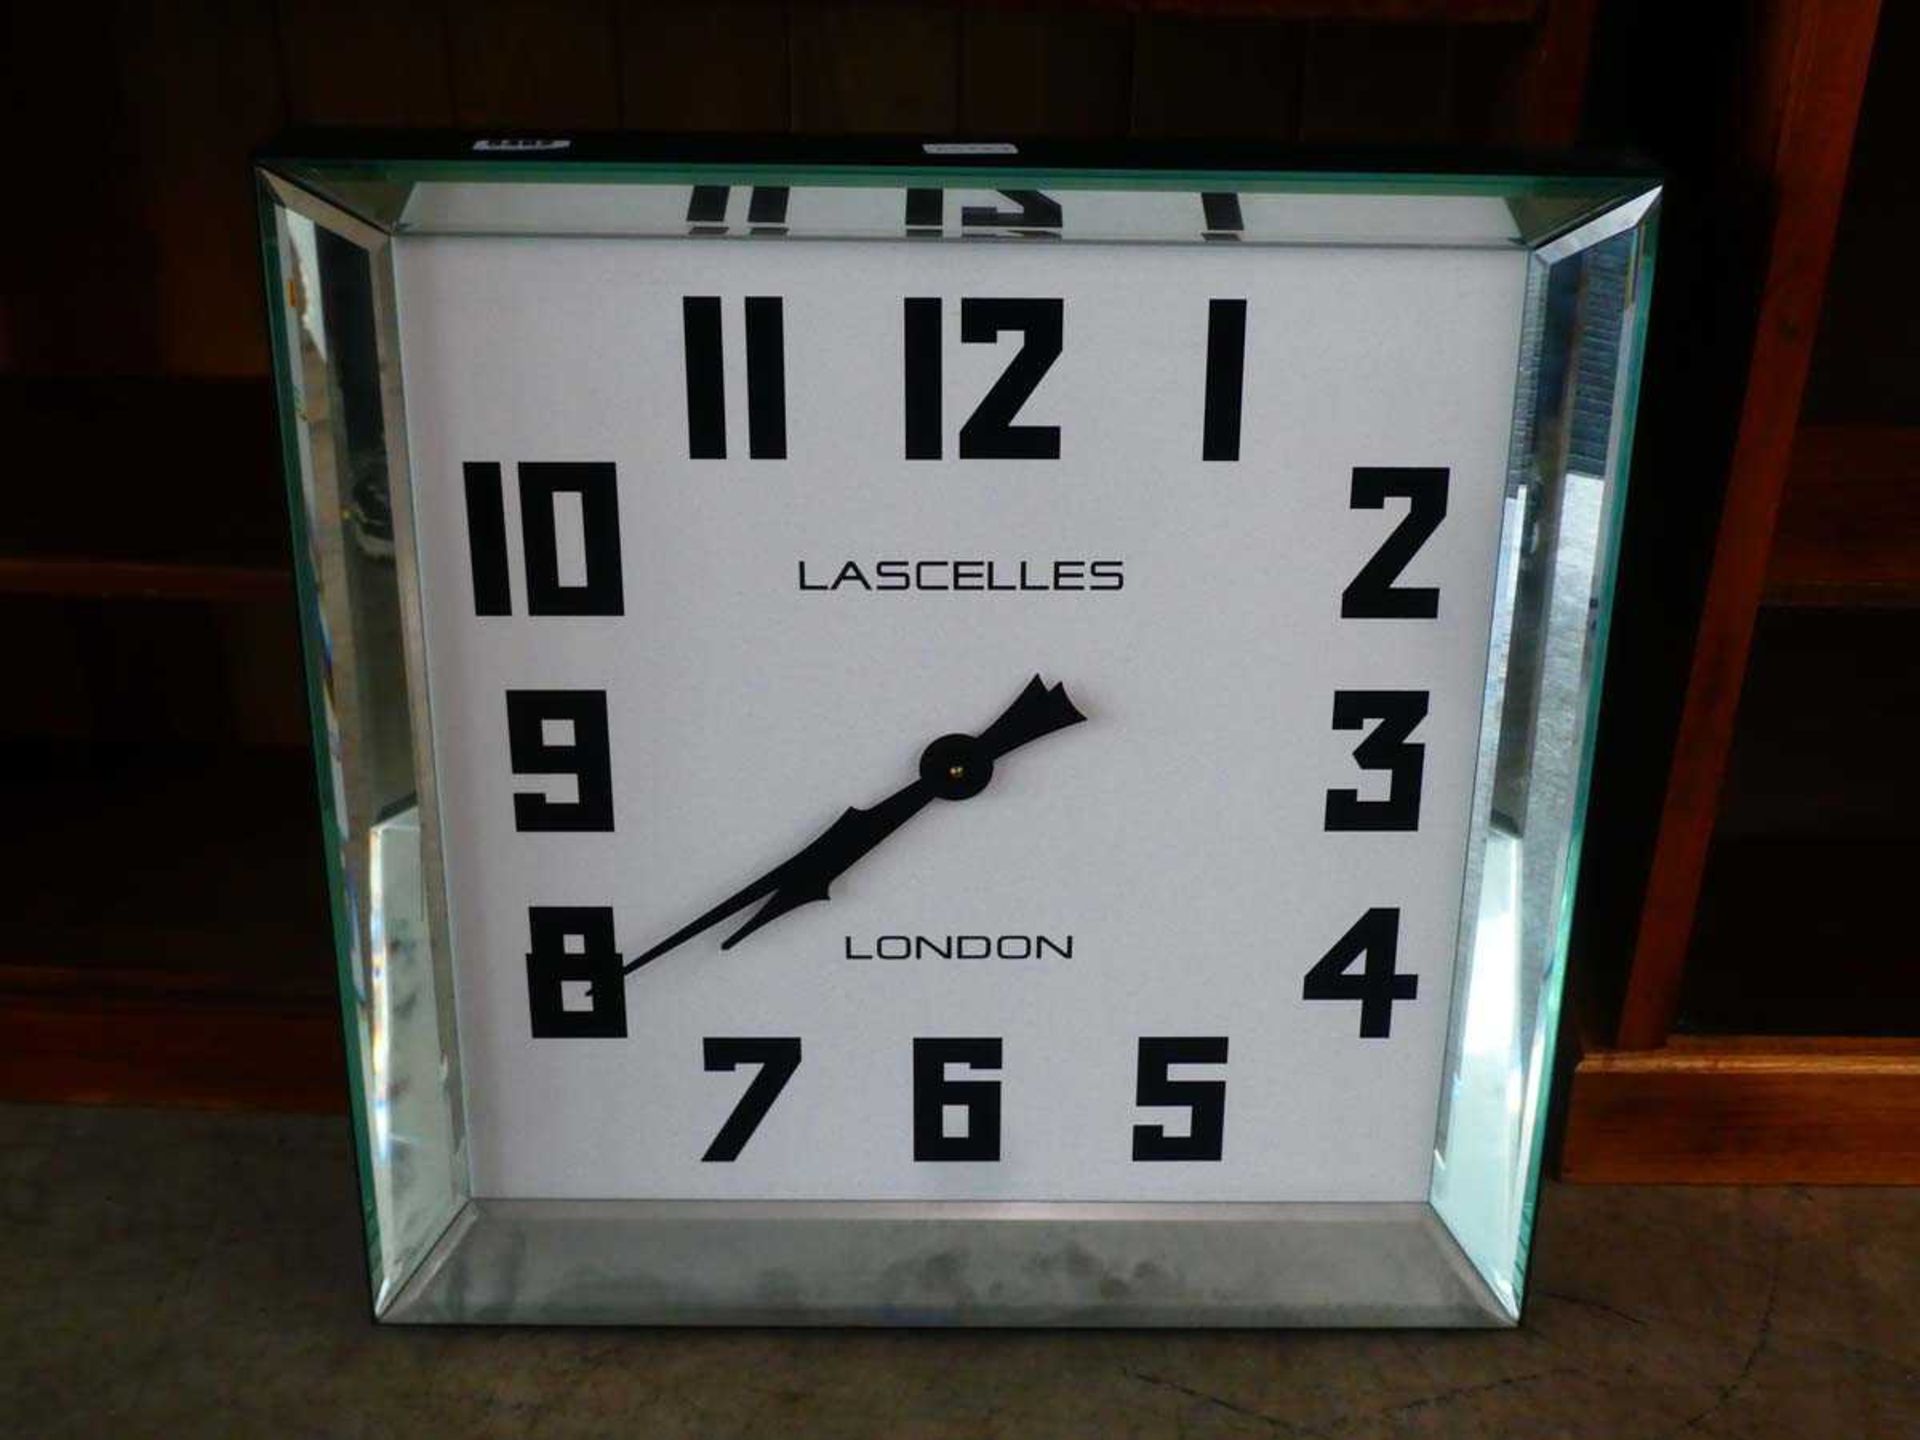 Quartz wall clock